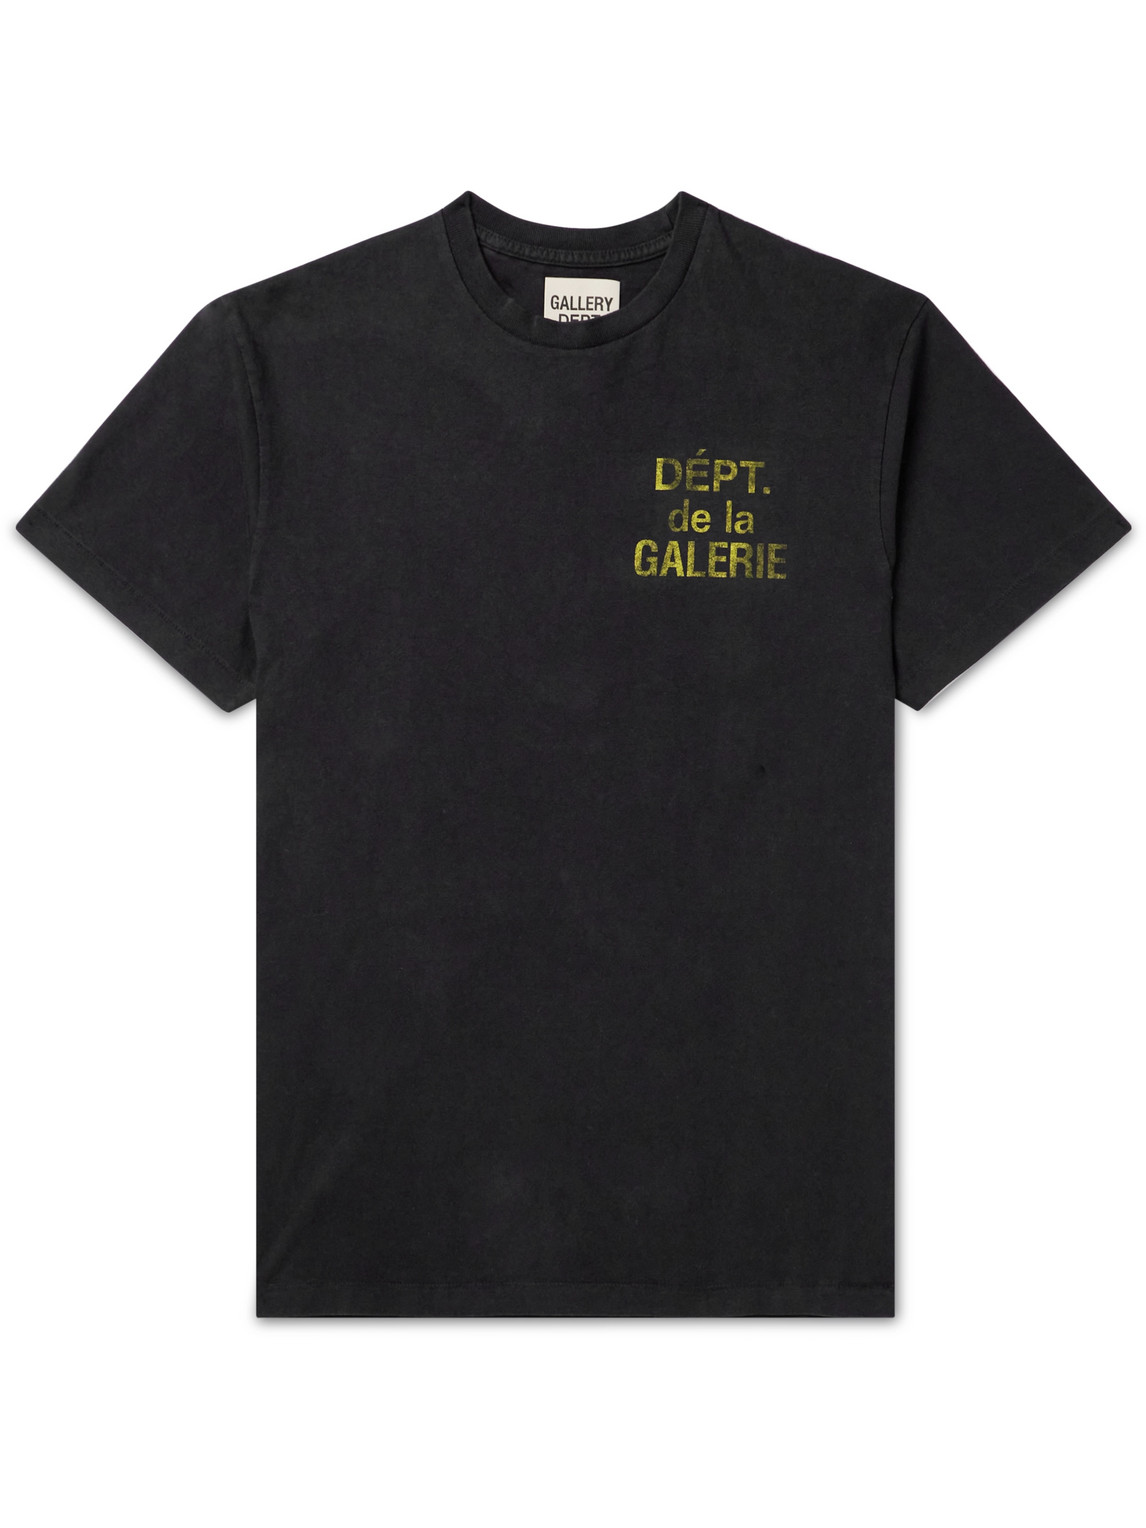 Gallery Dept. - French Logo-Print Cotton-Jersey T-Shirt - Men - Black - M von Gallery Dept.